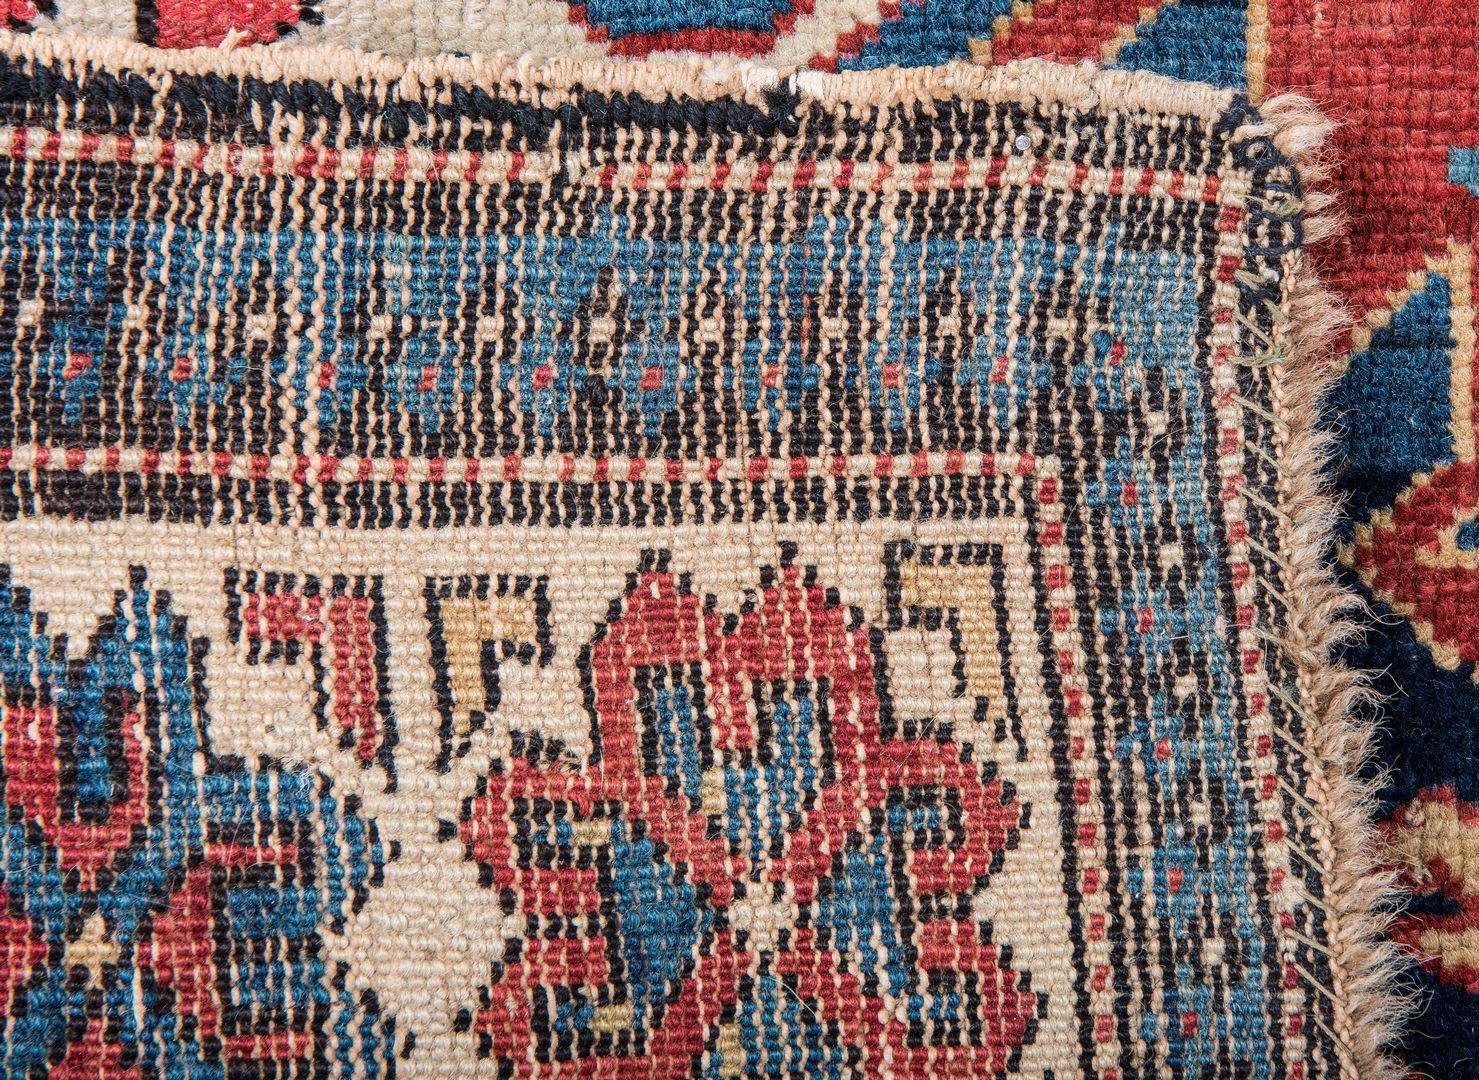 Lot 318: Antique Bidjov rug, Northeast Caucasus